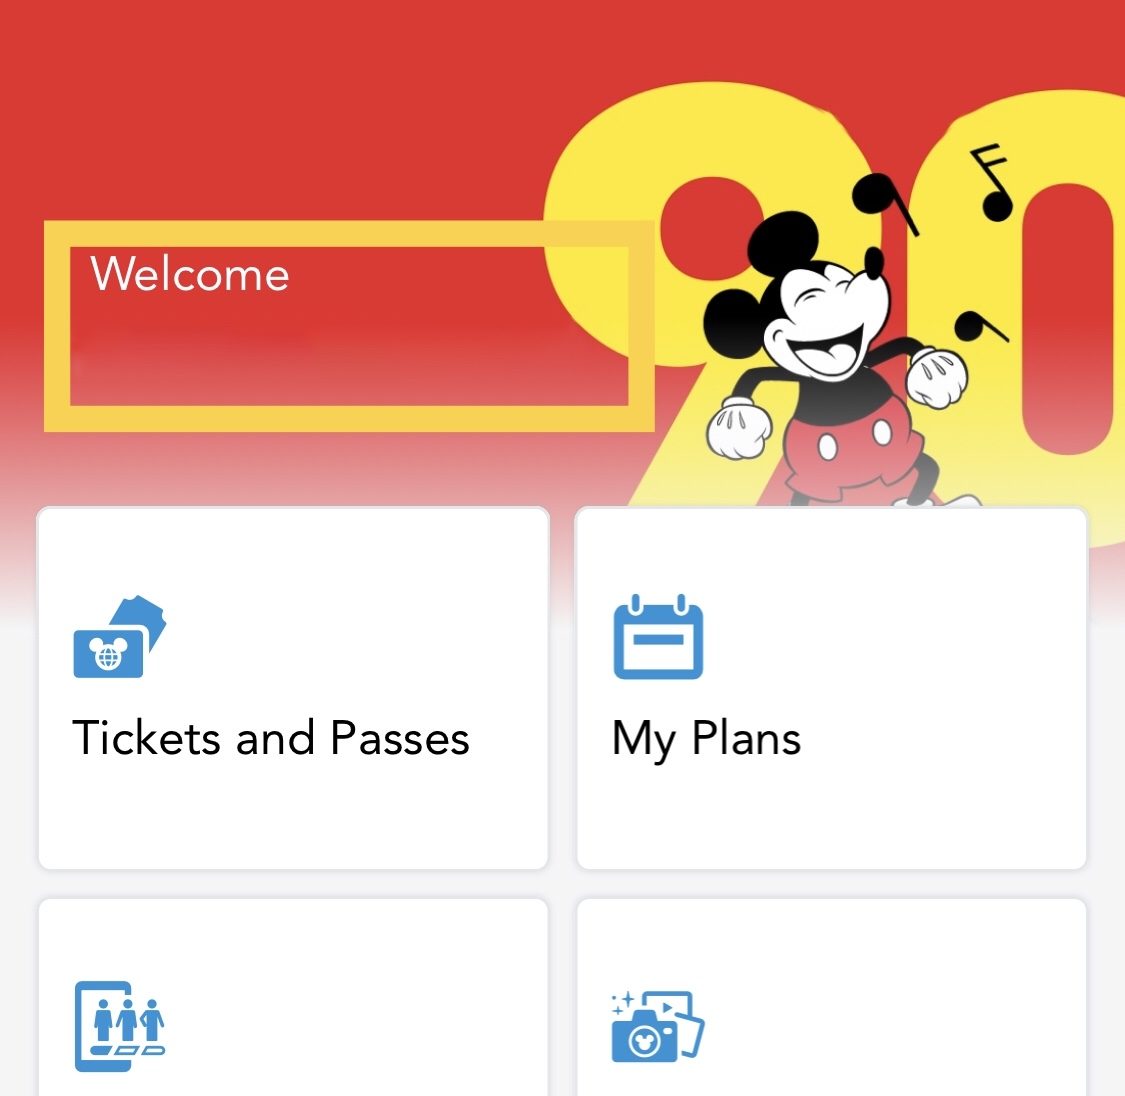 年最新 Wdw公式アプリ My Disney Experience が日本のアプリストアからインストールできるようになった ふたり旅行記 Wdwとユニバーサルオーランドの楽しみ方をご紹介